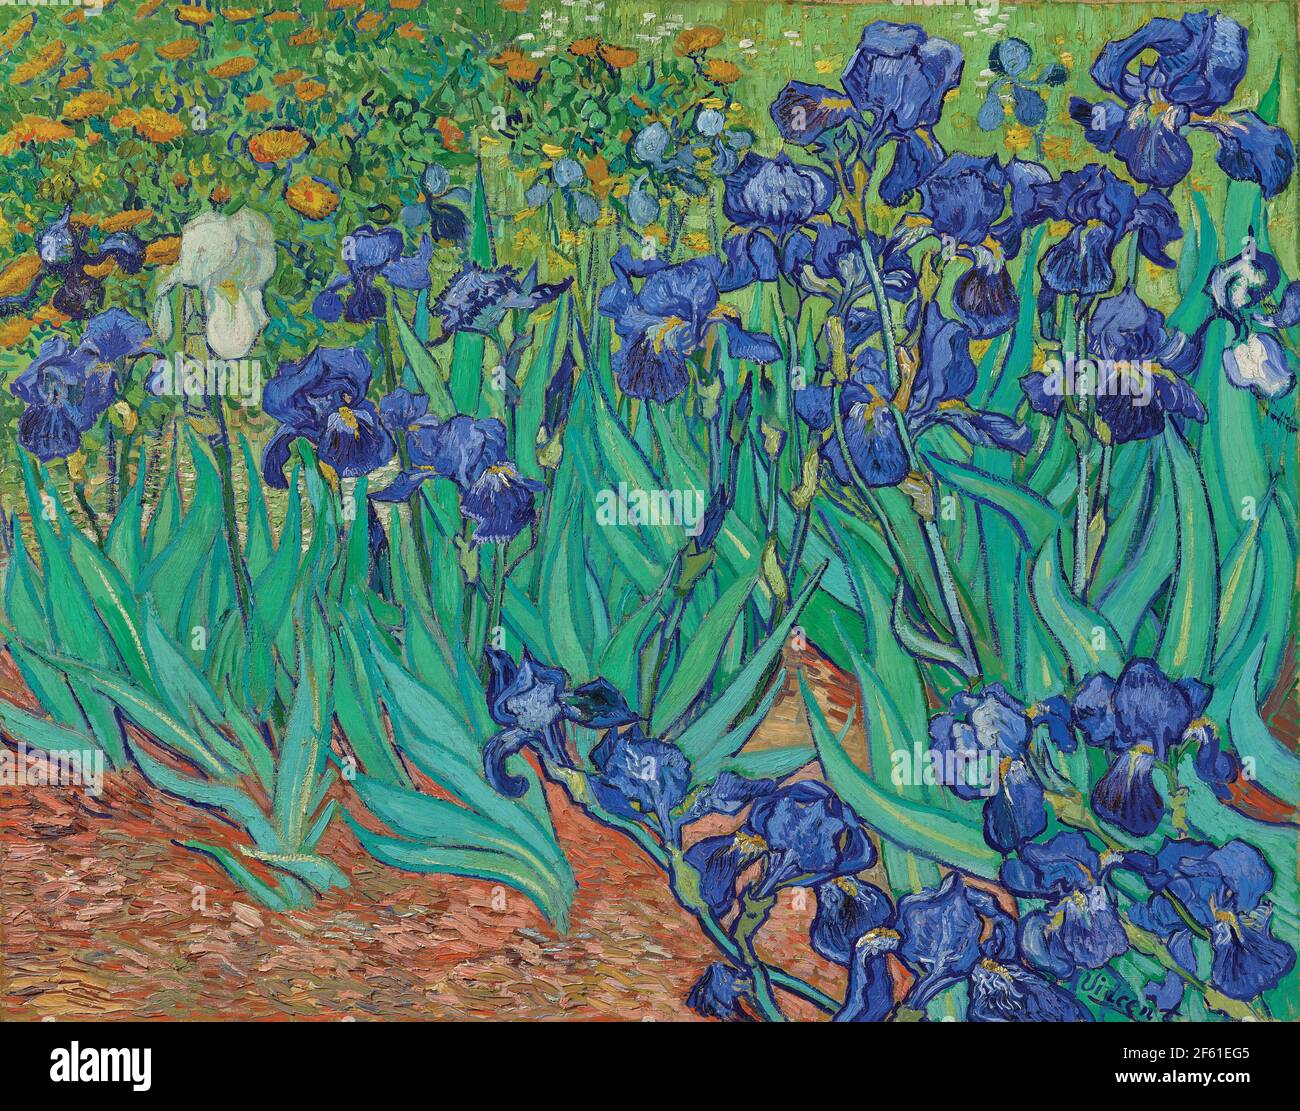 Iris di Vincent van Gogh. Vincent van Gogh, 1853 - 1890, artista post-impressionista olandese. Iris è stato dipinto nel 1889, mentre van Gogh era in asilo a Saint-Rémy-de-Provence. Il lavoro è nella collezione del J.Paul Getty Museum di Los Angeles. Foto Stock